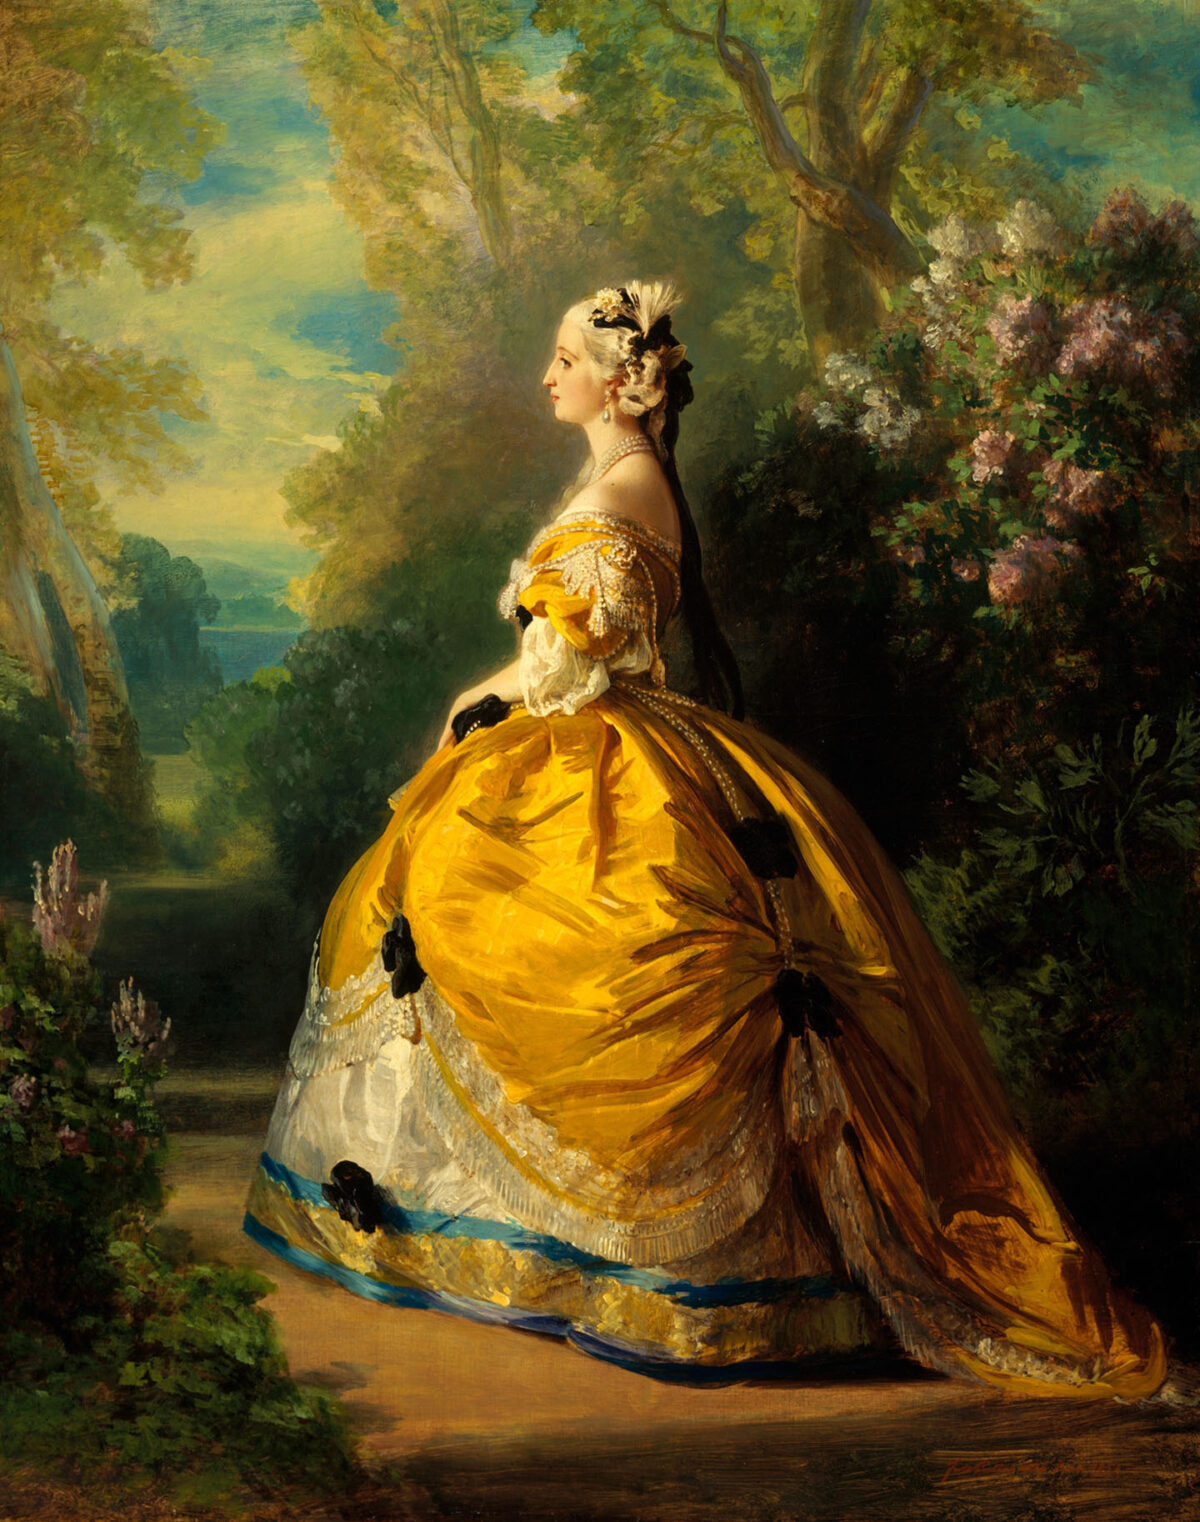 Bức tranh “The Empress Eugénie” (Hoàng hậu Eugénie) của họa sĩ Franz Xaver Winterhalter, năm 1854. Tranh sơn dầu trên vải canvas. Viện bảo tàng Nghệ thuật Metropolitan, New York. (Ảnh: Tài liệu công cộng)